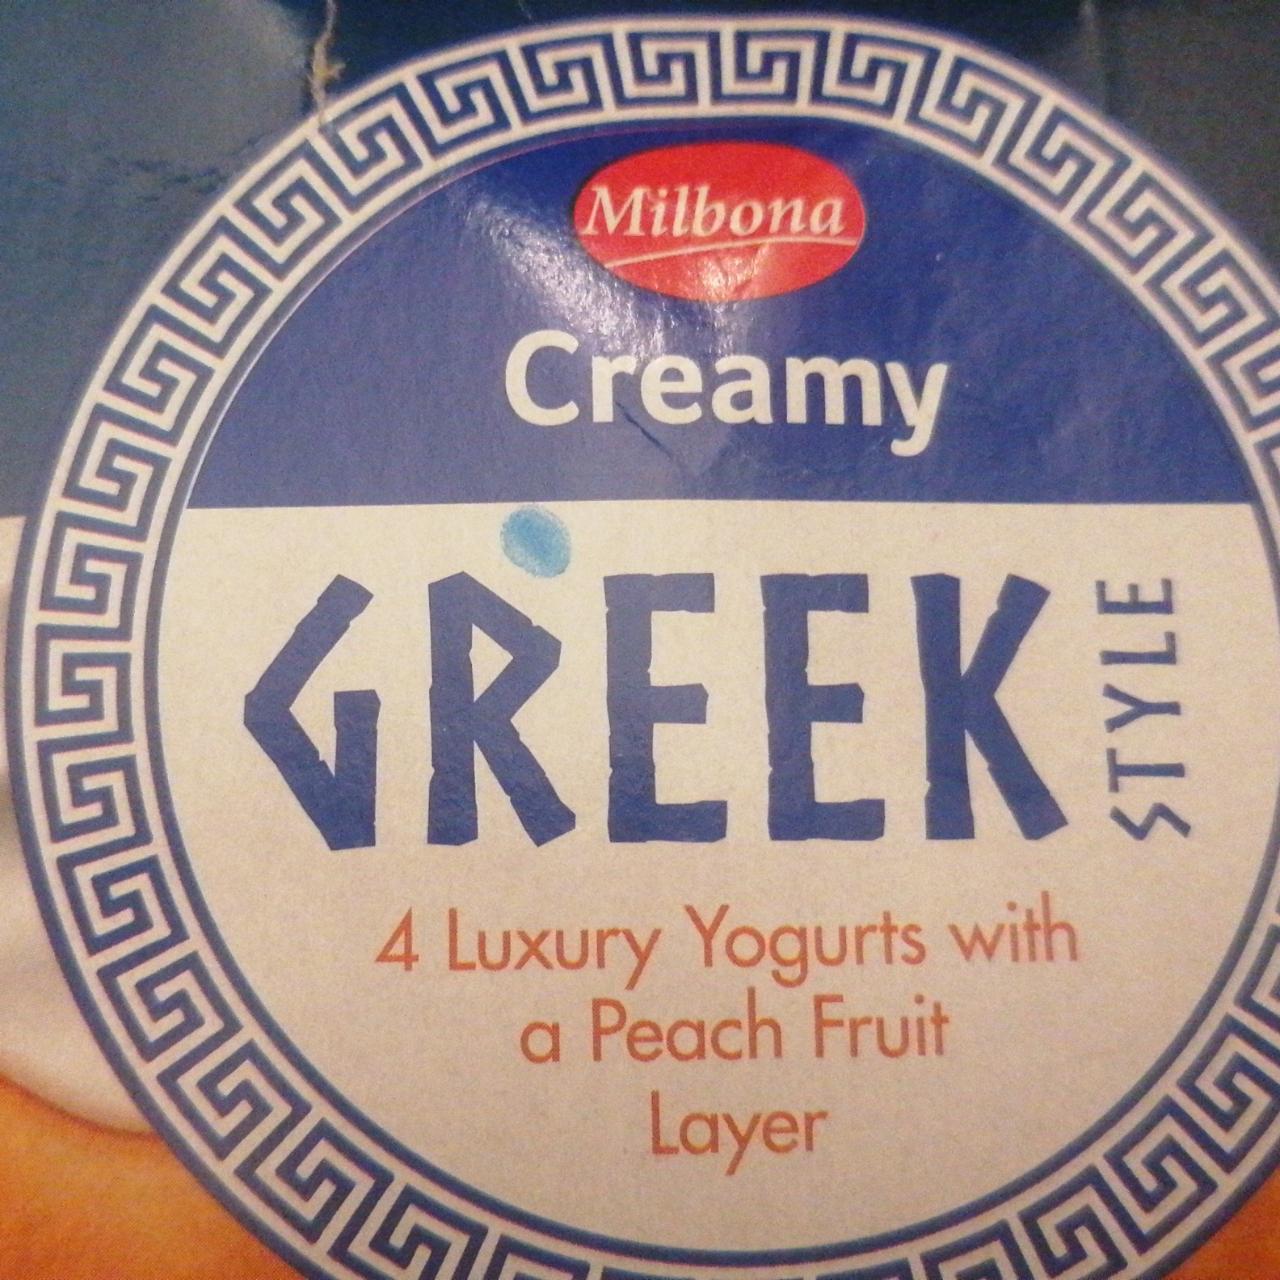 Fotografie - Greek Style Creamy 4 Luxury Yogurts with Peach Fruit Layer Milbona